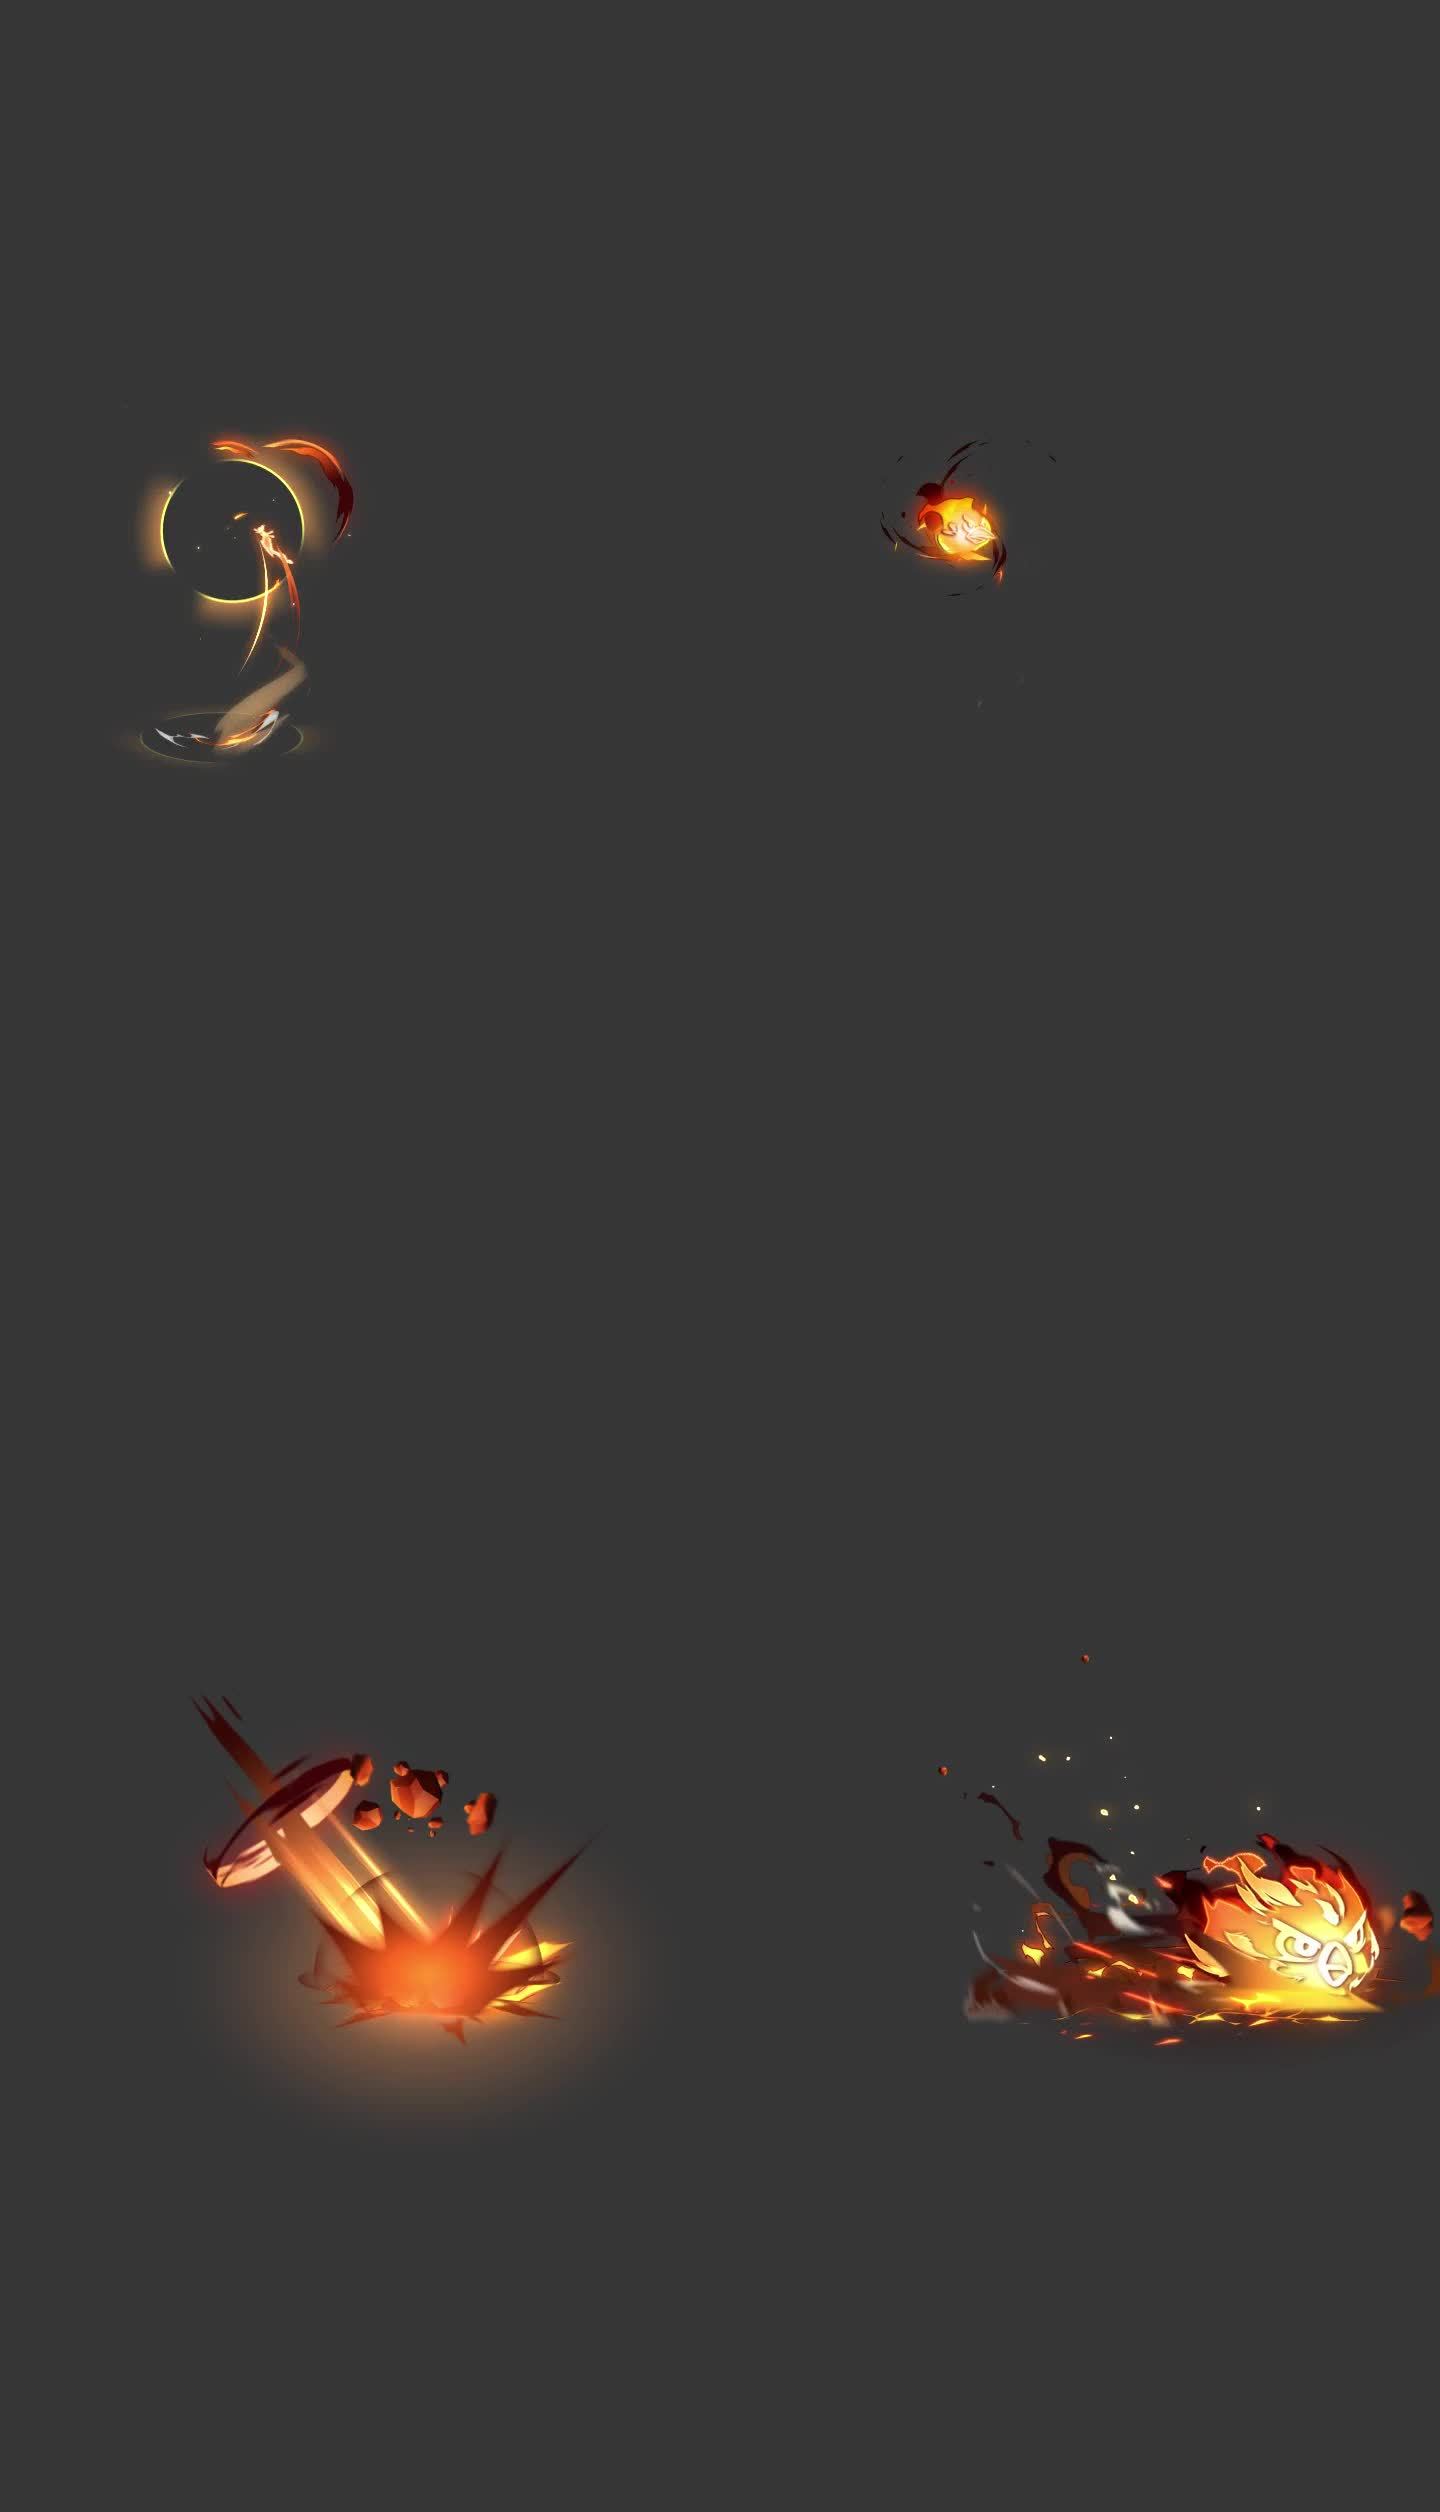 【AE工程】火焰攻击技能游戏特效二次元